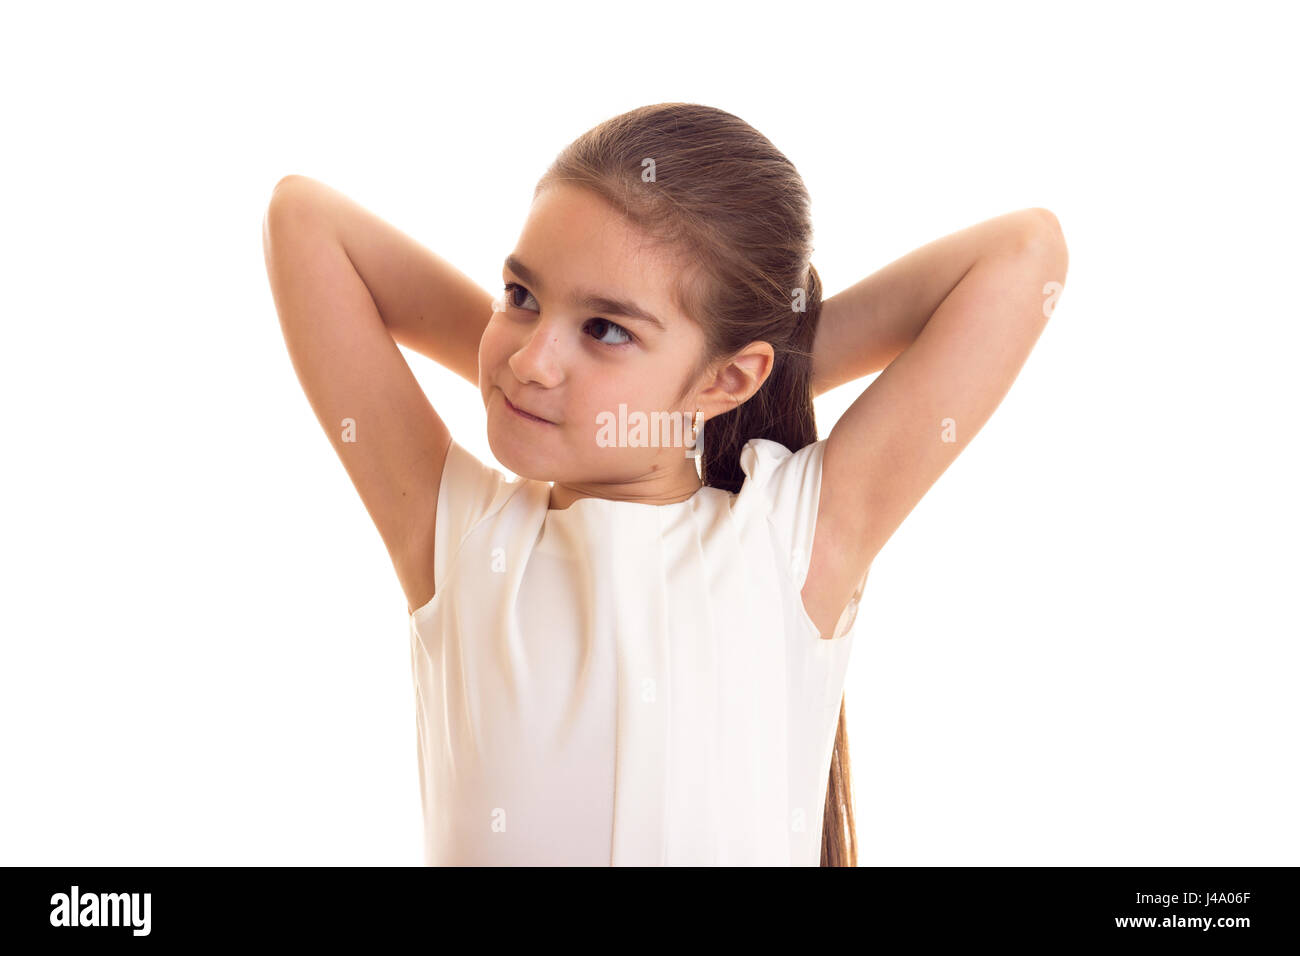 Kleines Mädchen im weißen T-shirt und schwarzer Rock Stockfoto